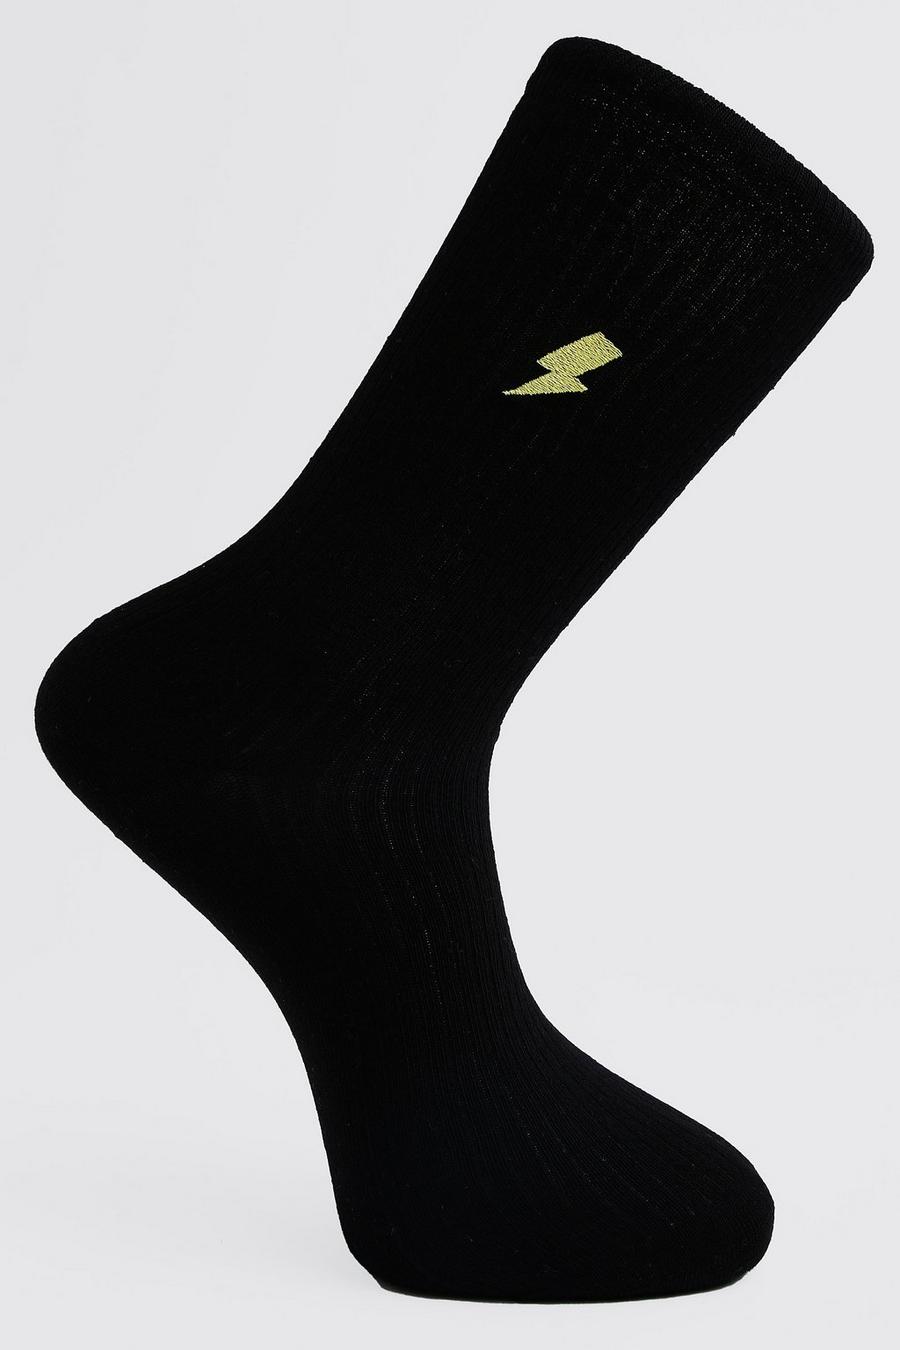 Black Lightning Bolt Embroidered Socks image number 1